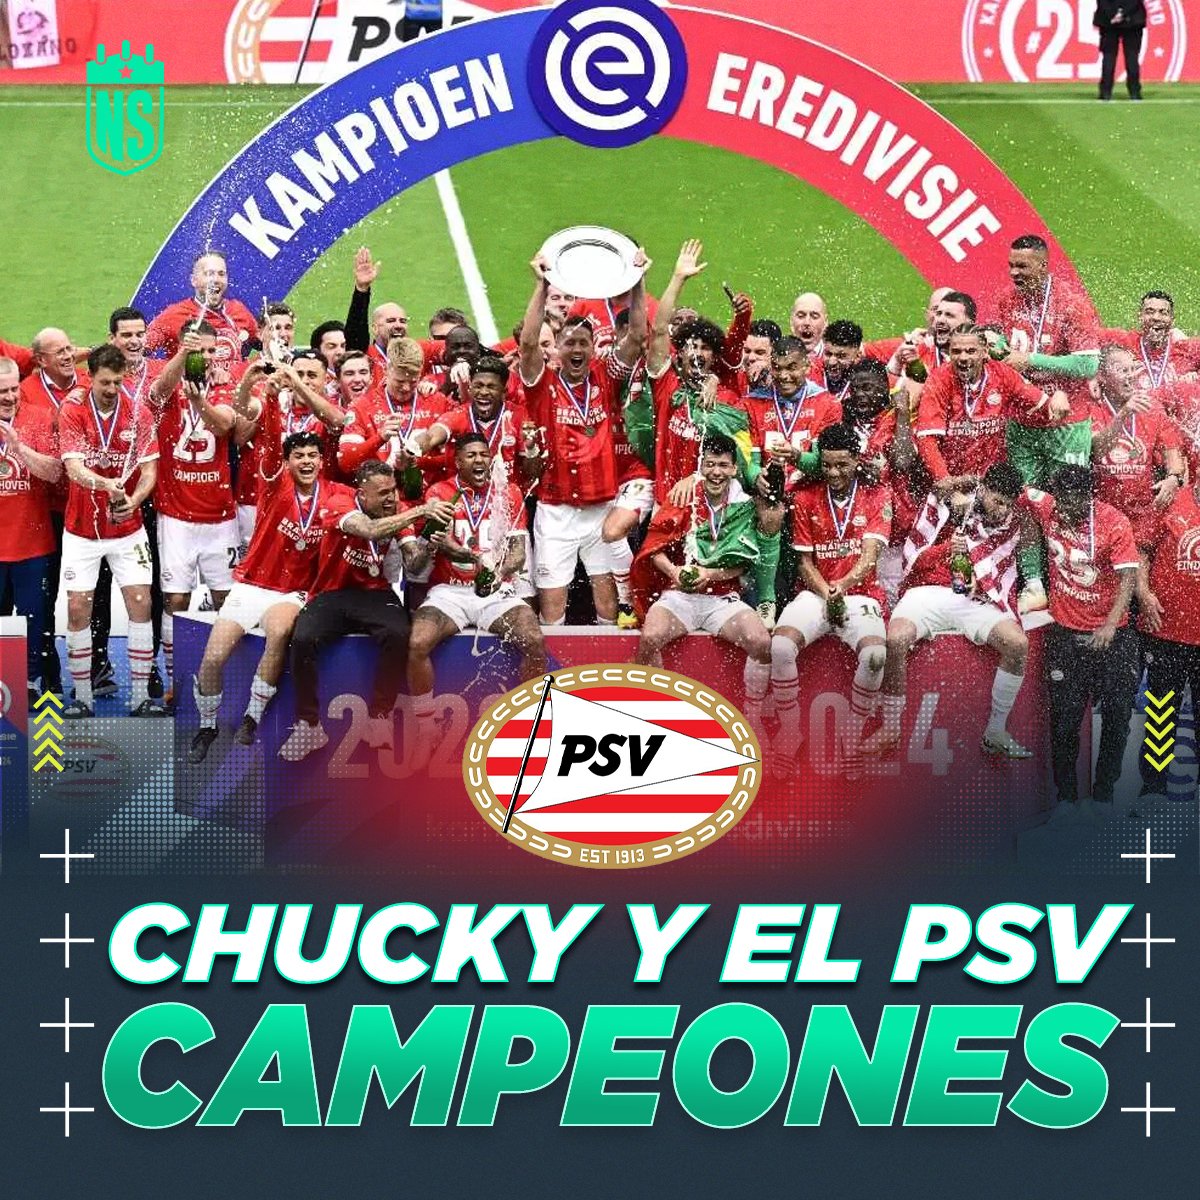 🏆⚽ ¡CAMPEÓN MEXICANO! 💪🏻
En su regreso al cuadro de Eindhoven #ChuckyLozano levanta el título de la #Eredivisie y celebra otro título en el fútbol europeo. PSV se corona con paso indiscutible, sumando más de 100 goles a favor y recibiendo sólo una derrota.